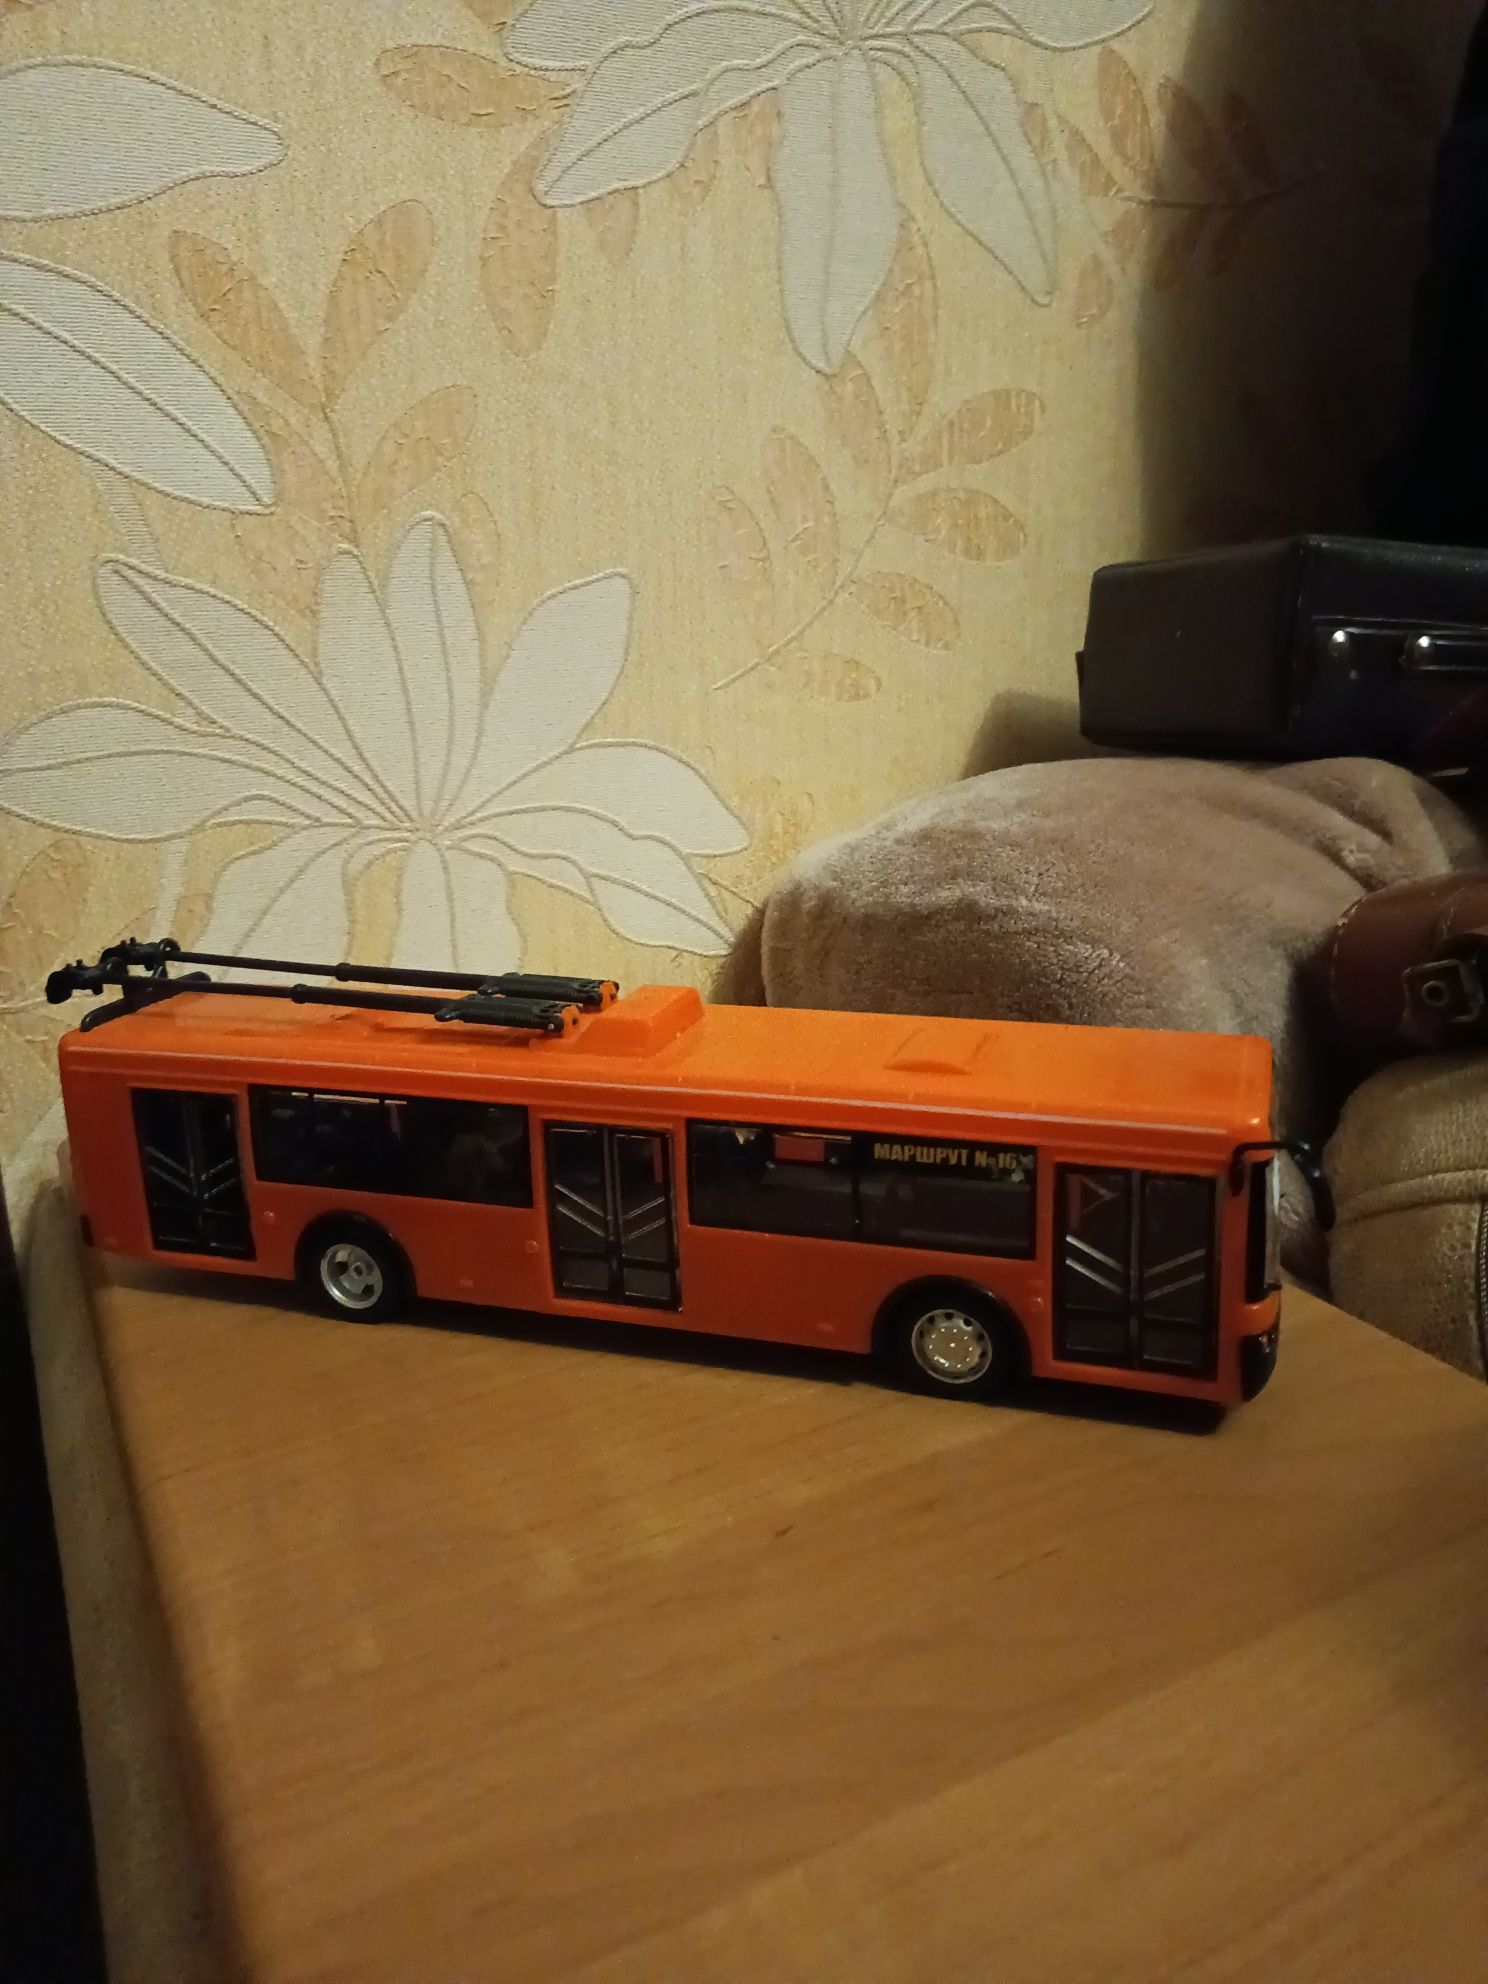 Іграшка тролейбус